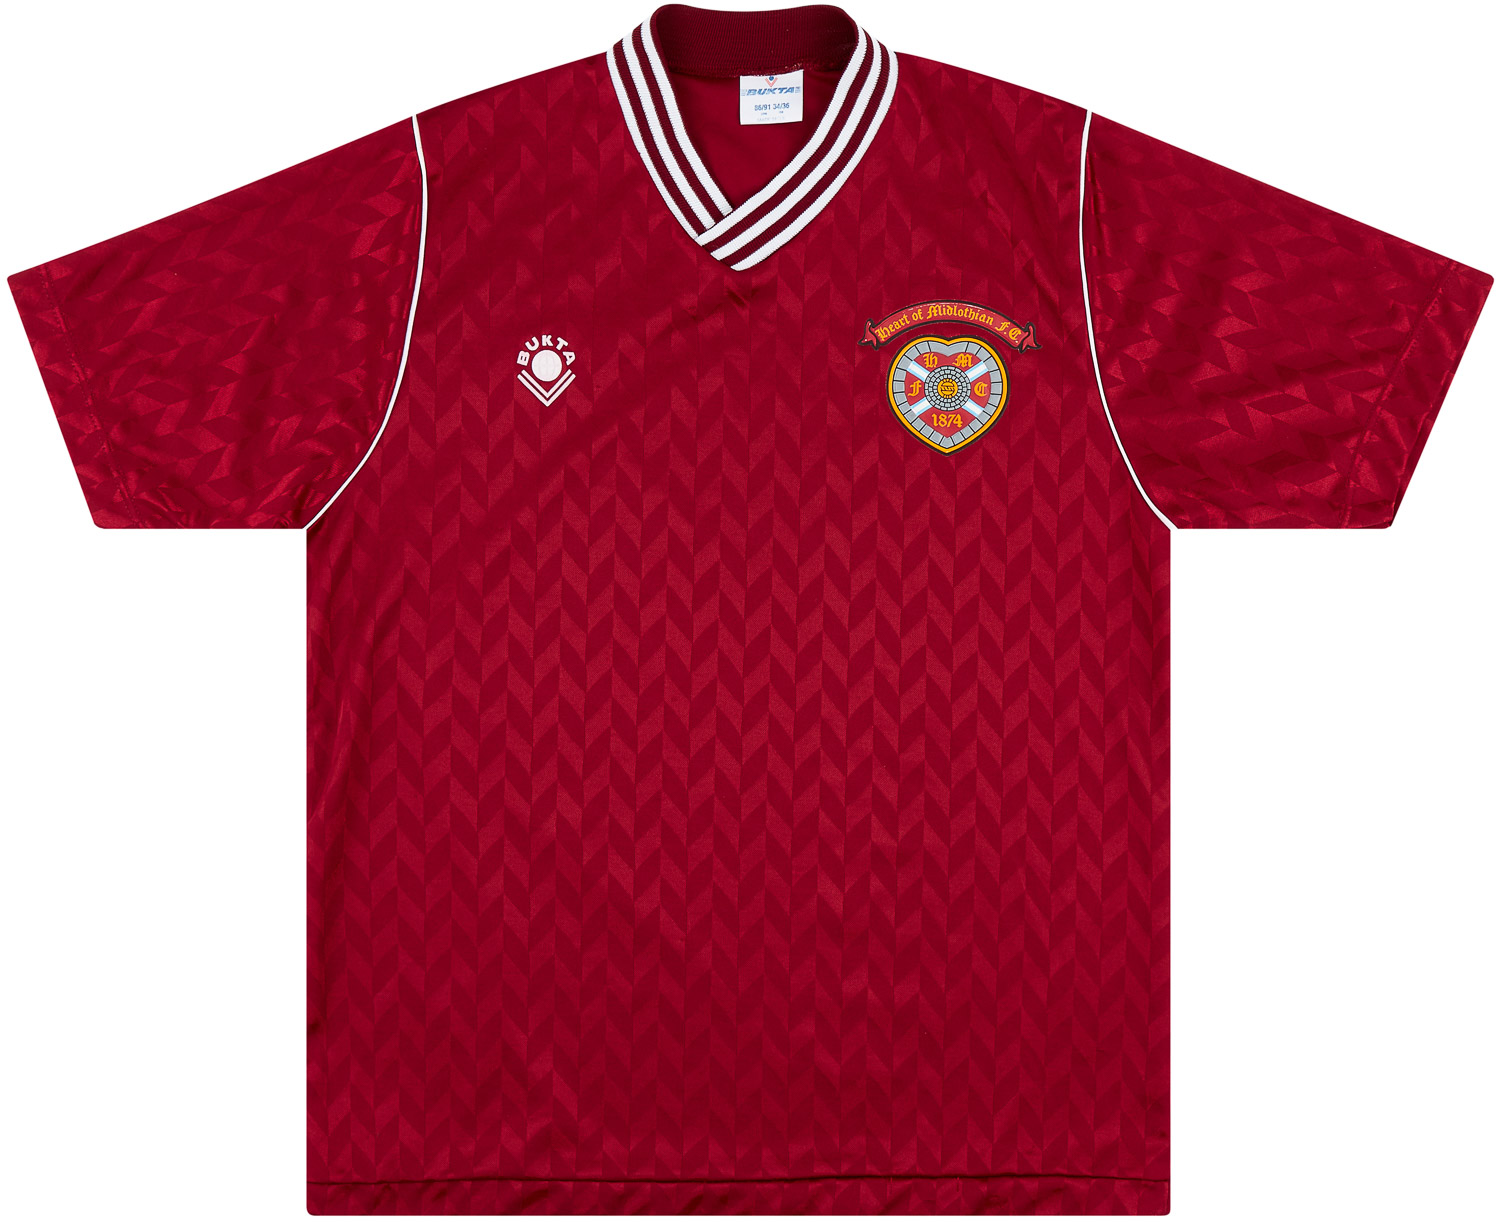 1989-90 Heart Of Midlothian (Hearts) Home Shirt - 8/10 - ()